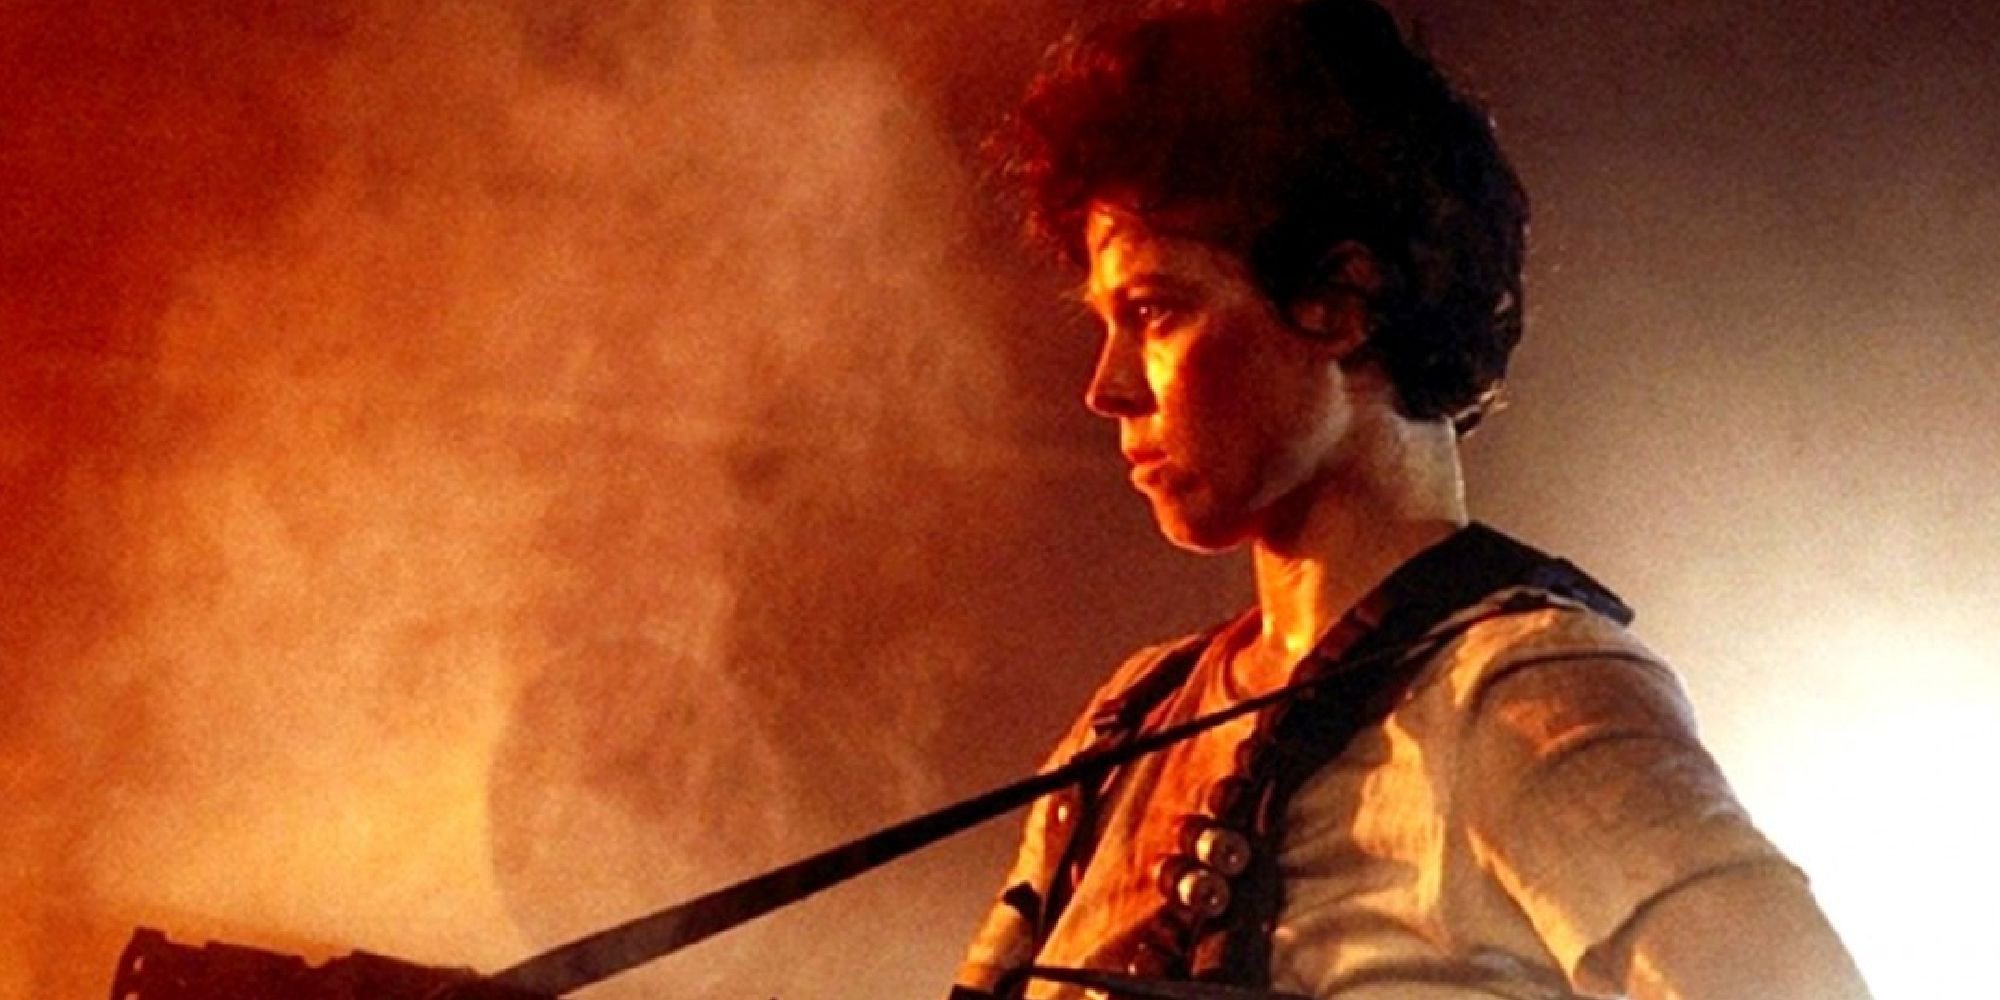 Sigourney Weaver dans le rôle d'Ellen Ripley tenant un pistolet dans Aliens.